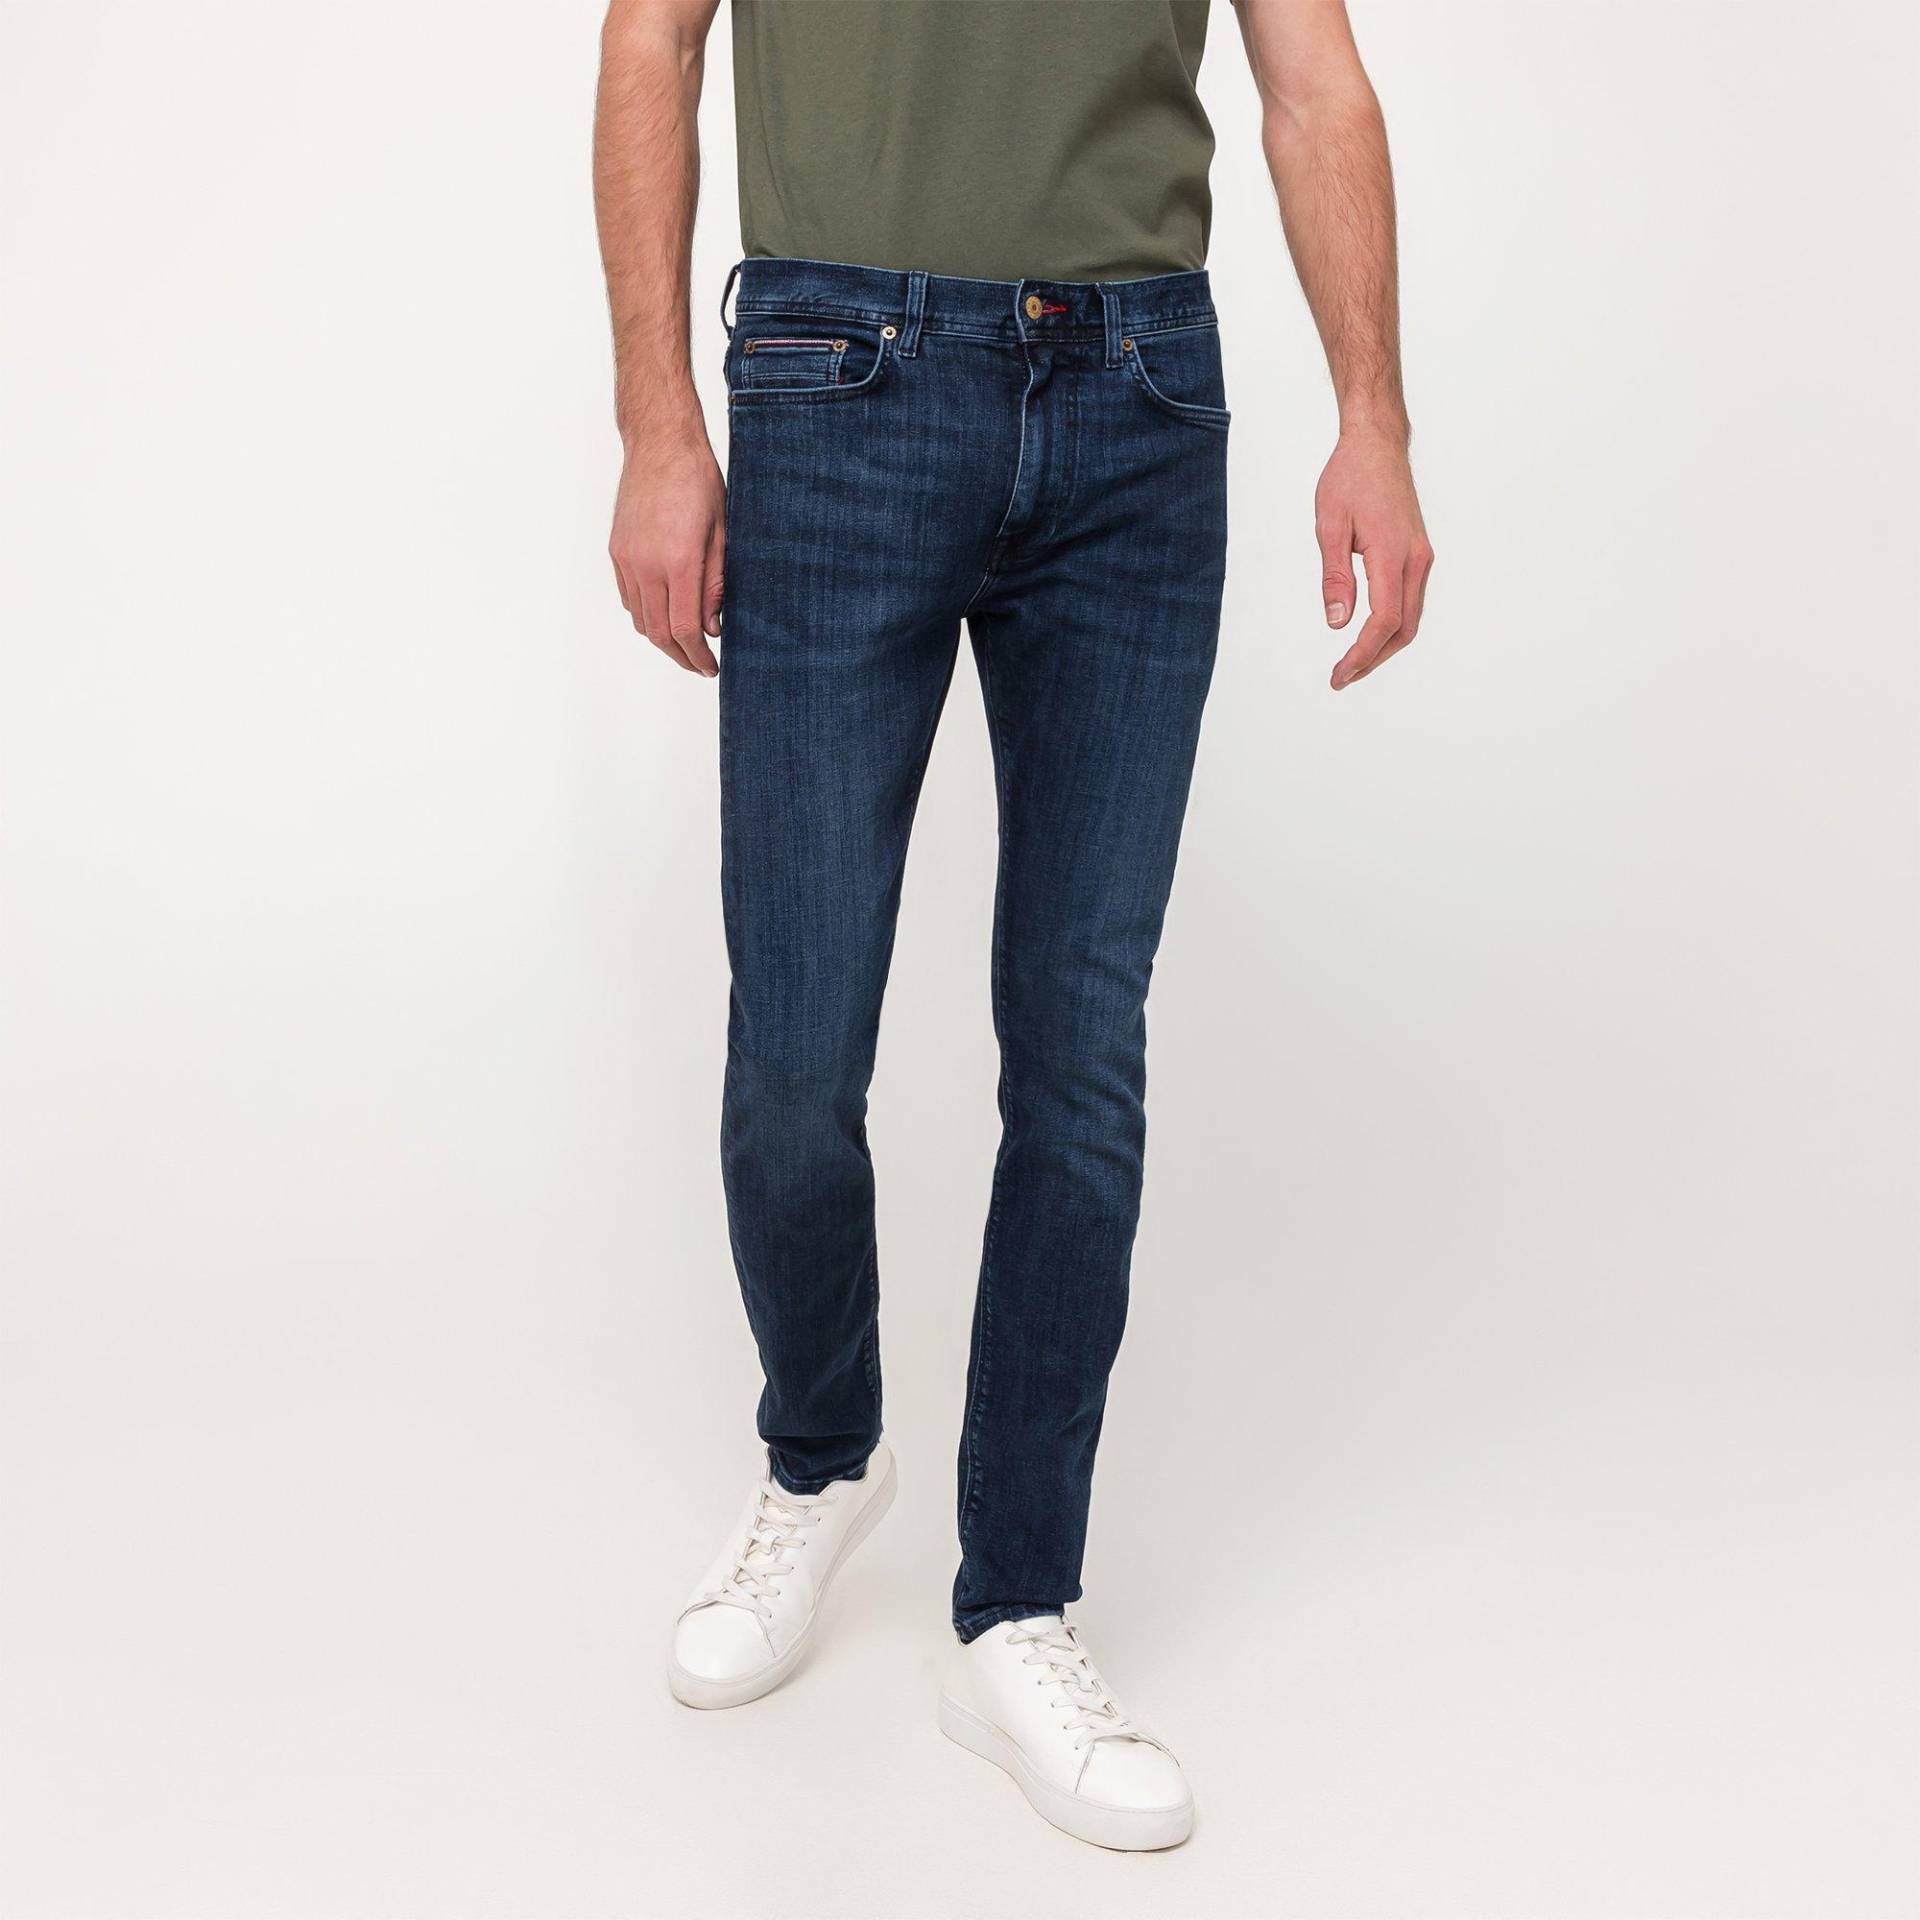 Jeans, Slim Fit Herren Indigo L30/W36 von TOMMY HILFIGER